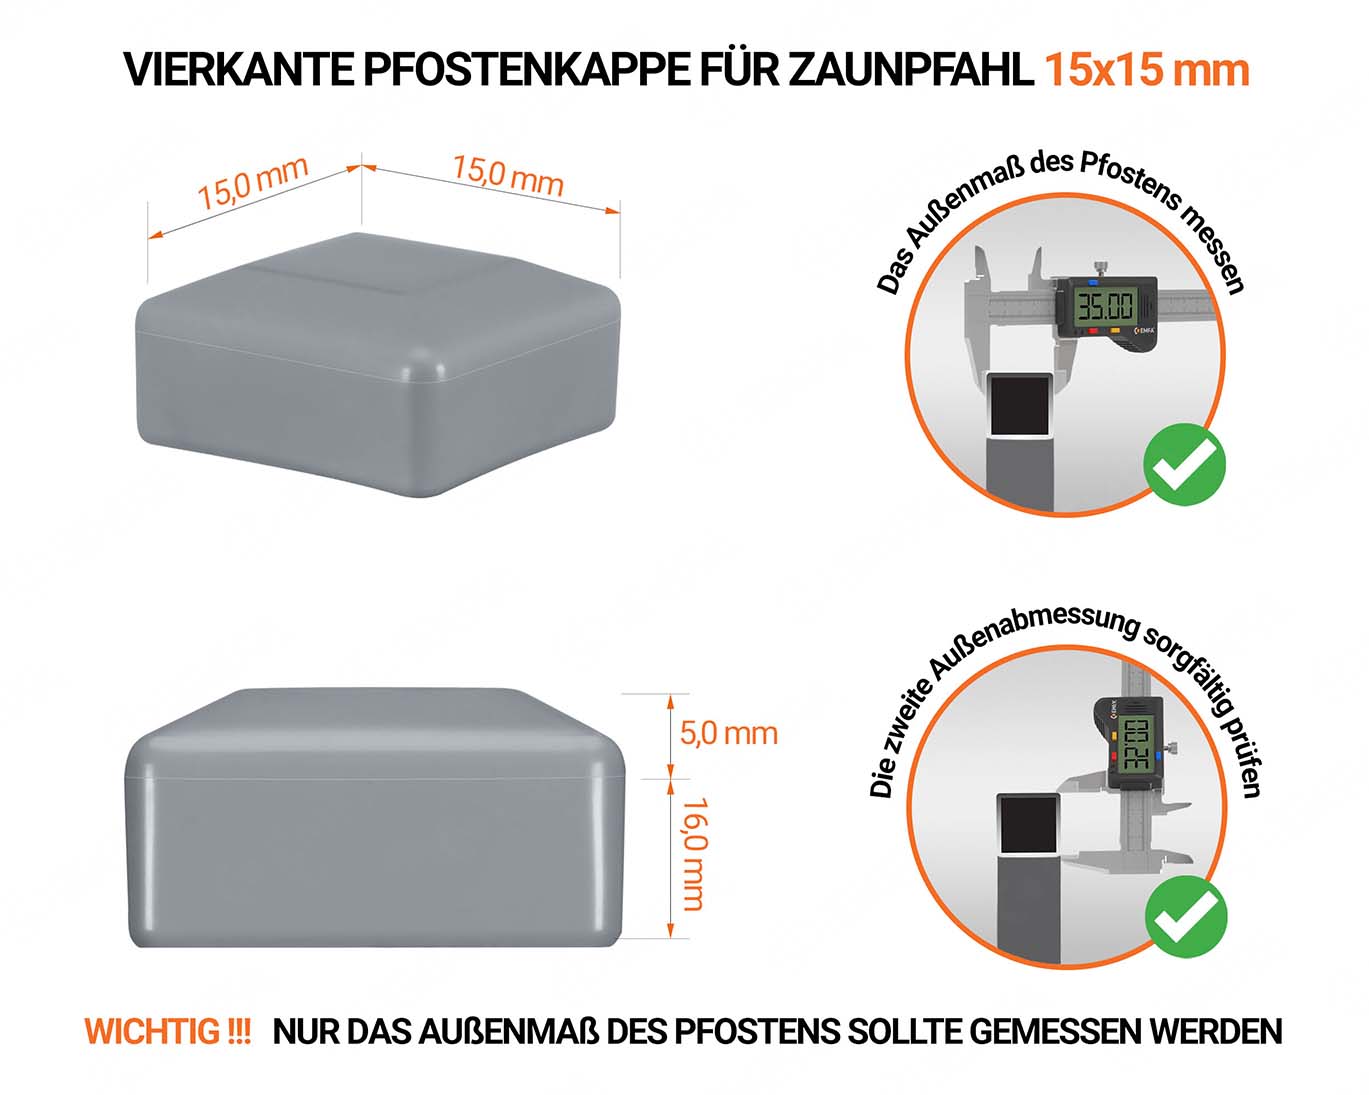 Graue Pfostenkappen vierkant für Pfostenmaße 15x15 mm  mit technischen Abmessungen und Anleitung für korrekte Messung